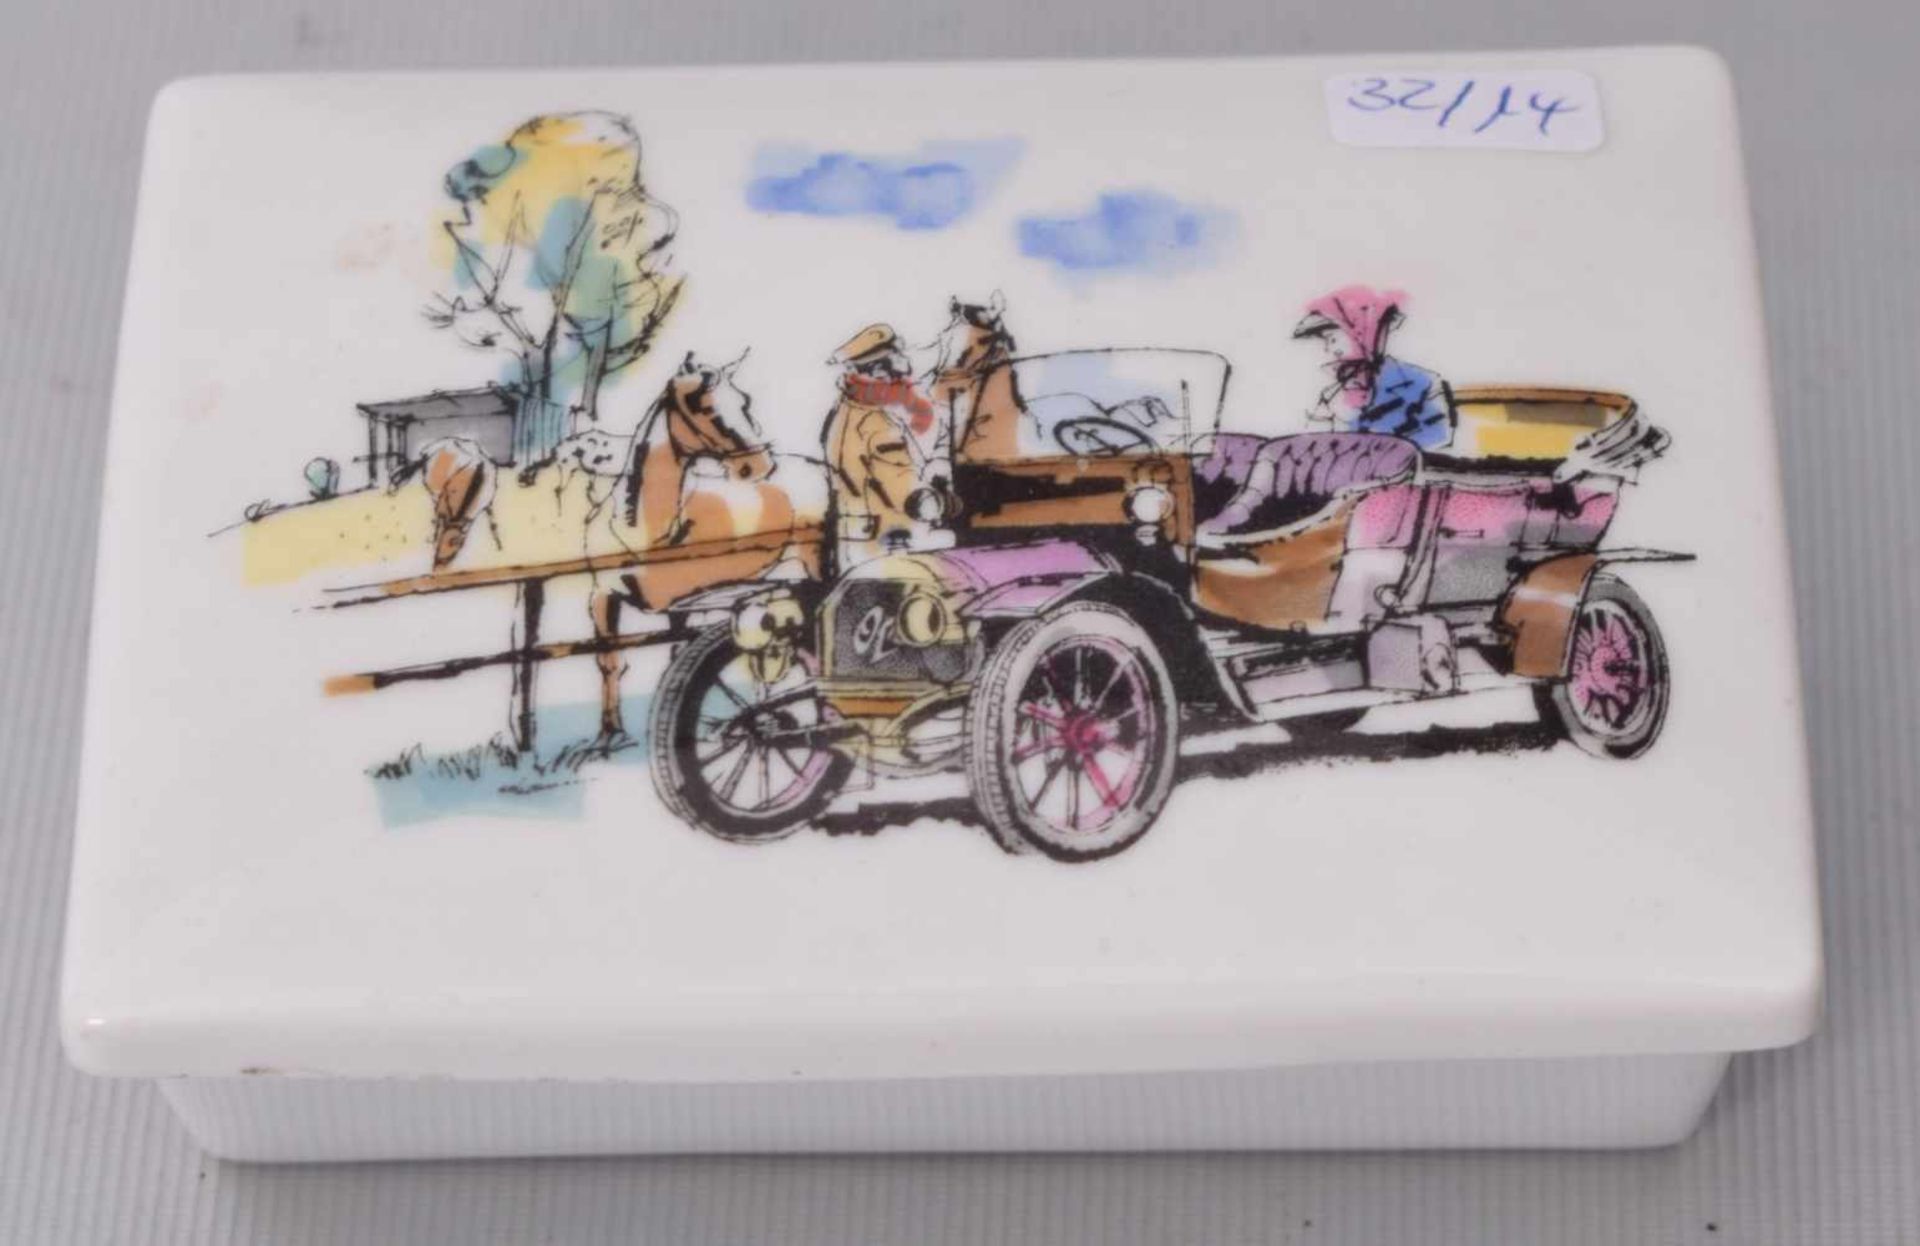 Deckeldoserechteckig, Deckel mit Automobil und Pferden auf der Koppel verziert, FM Rosenthal, 50er